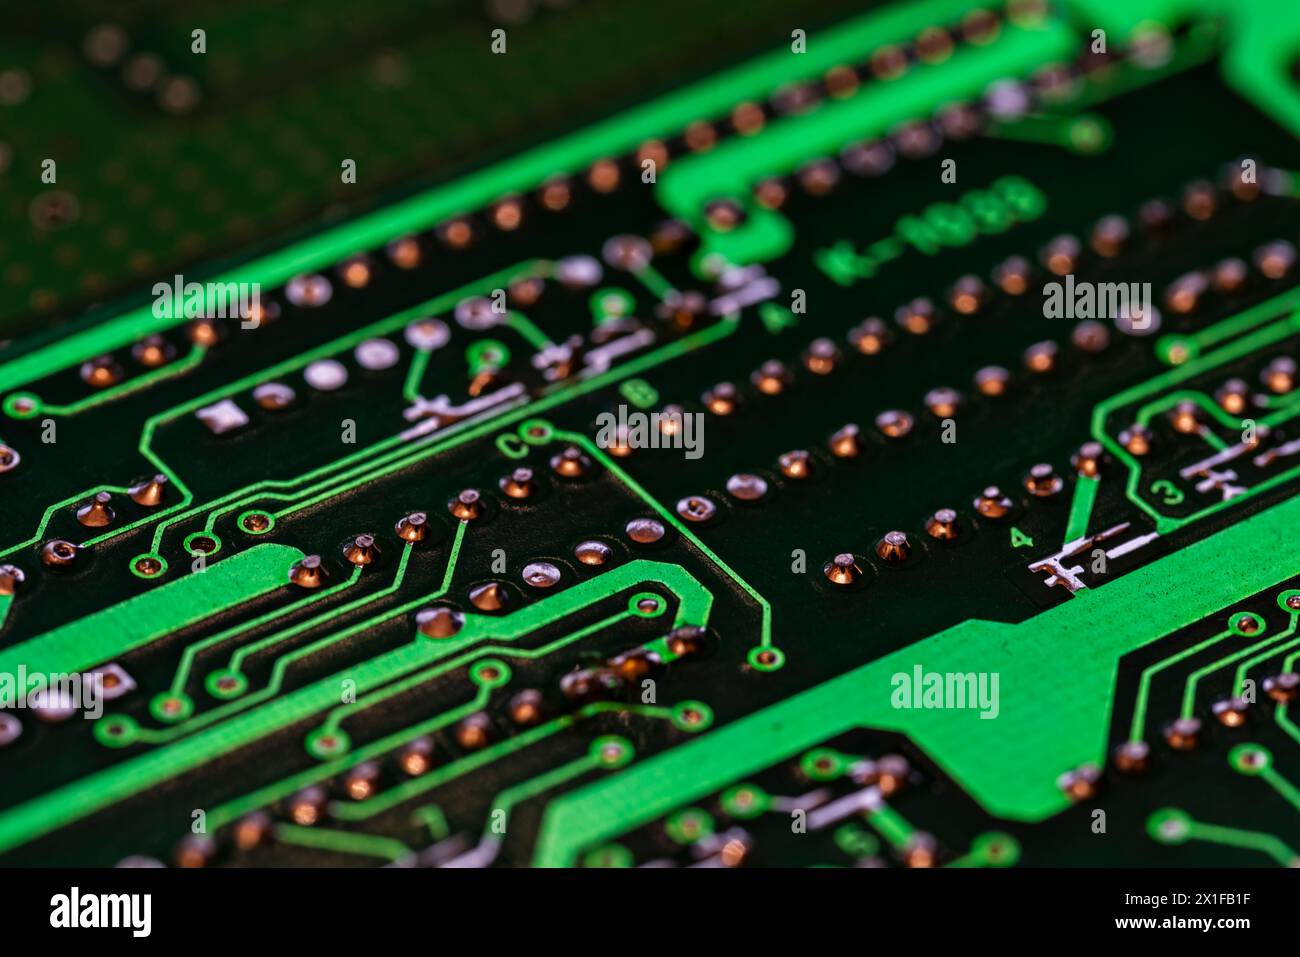 Detalle de múltiples de circuitos impresos de una placa electrónica de color verde Foto Stock